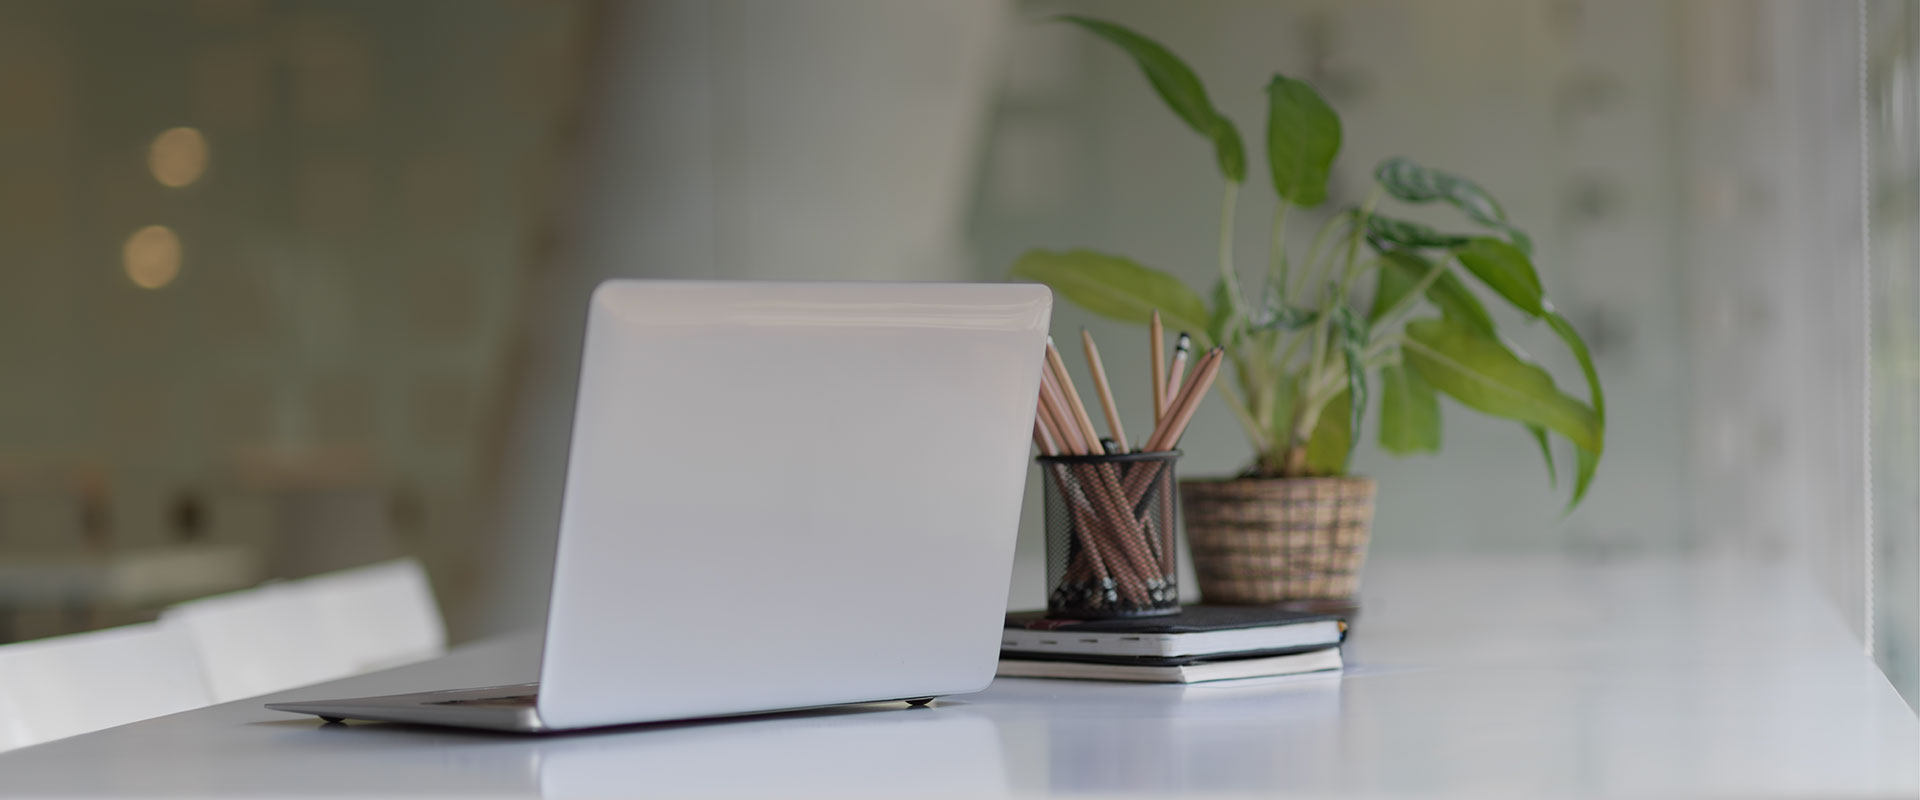 Notebook mit Stiften und einer Pflanze auf einem Tisch